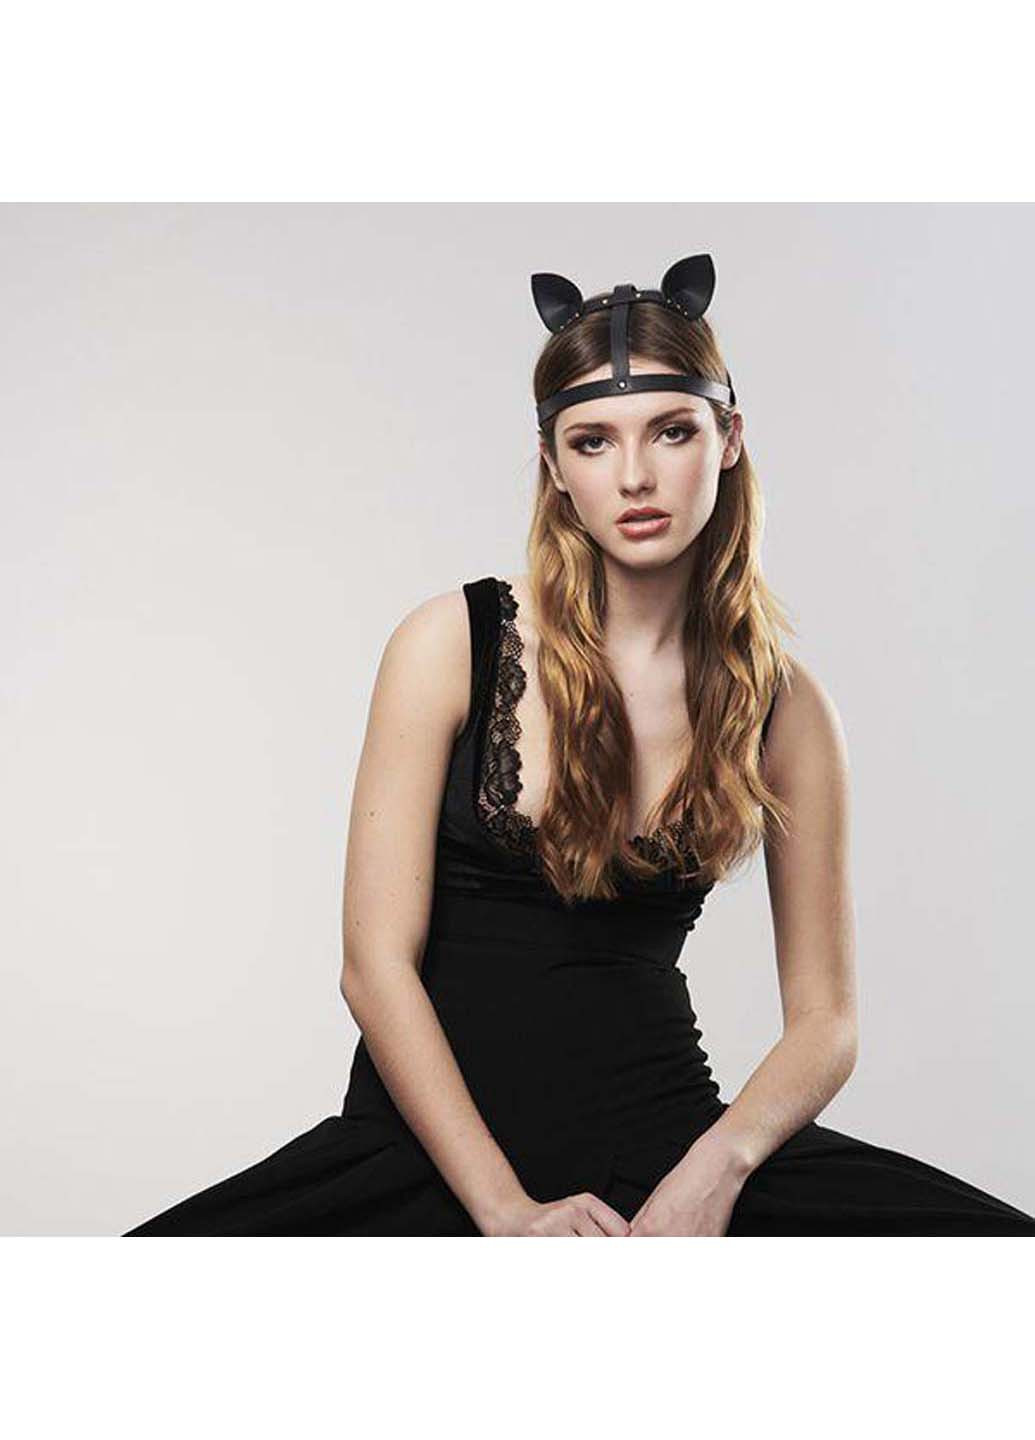 Кошачьи ушки MAZE Cat Ears Headpiece Black Bijoux Indiscrets (255611375)